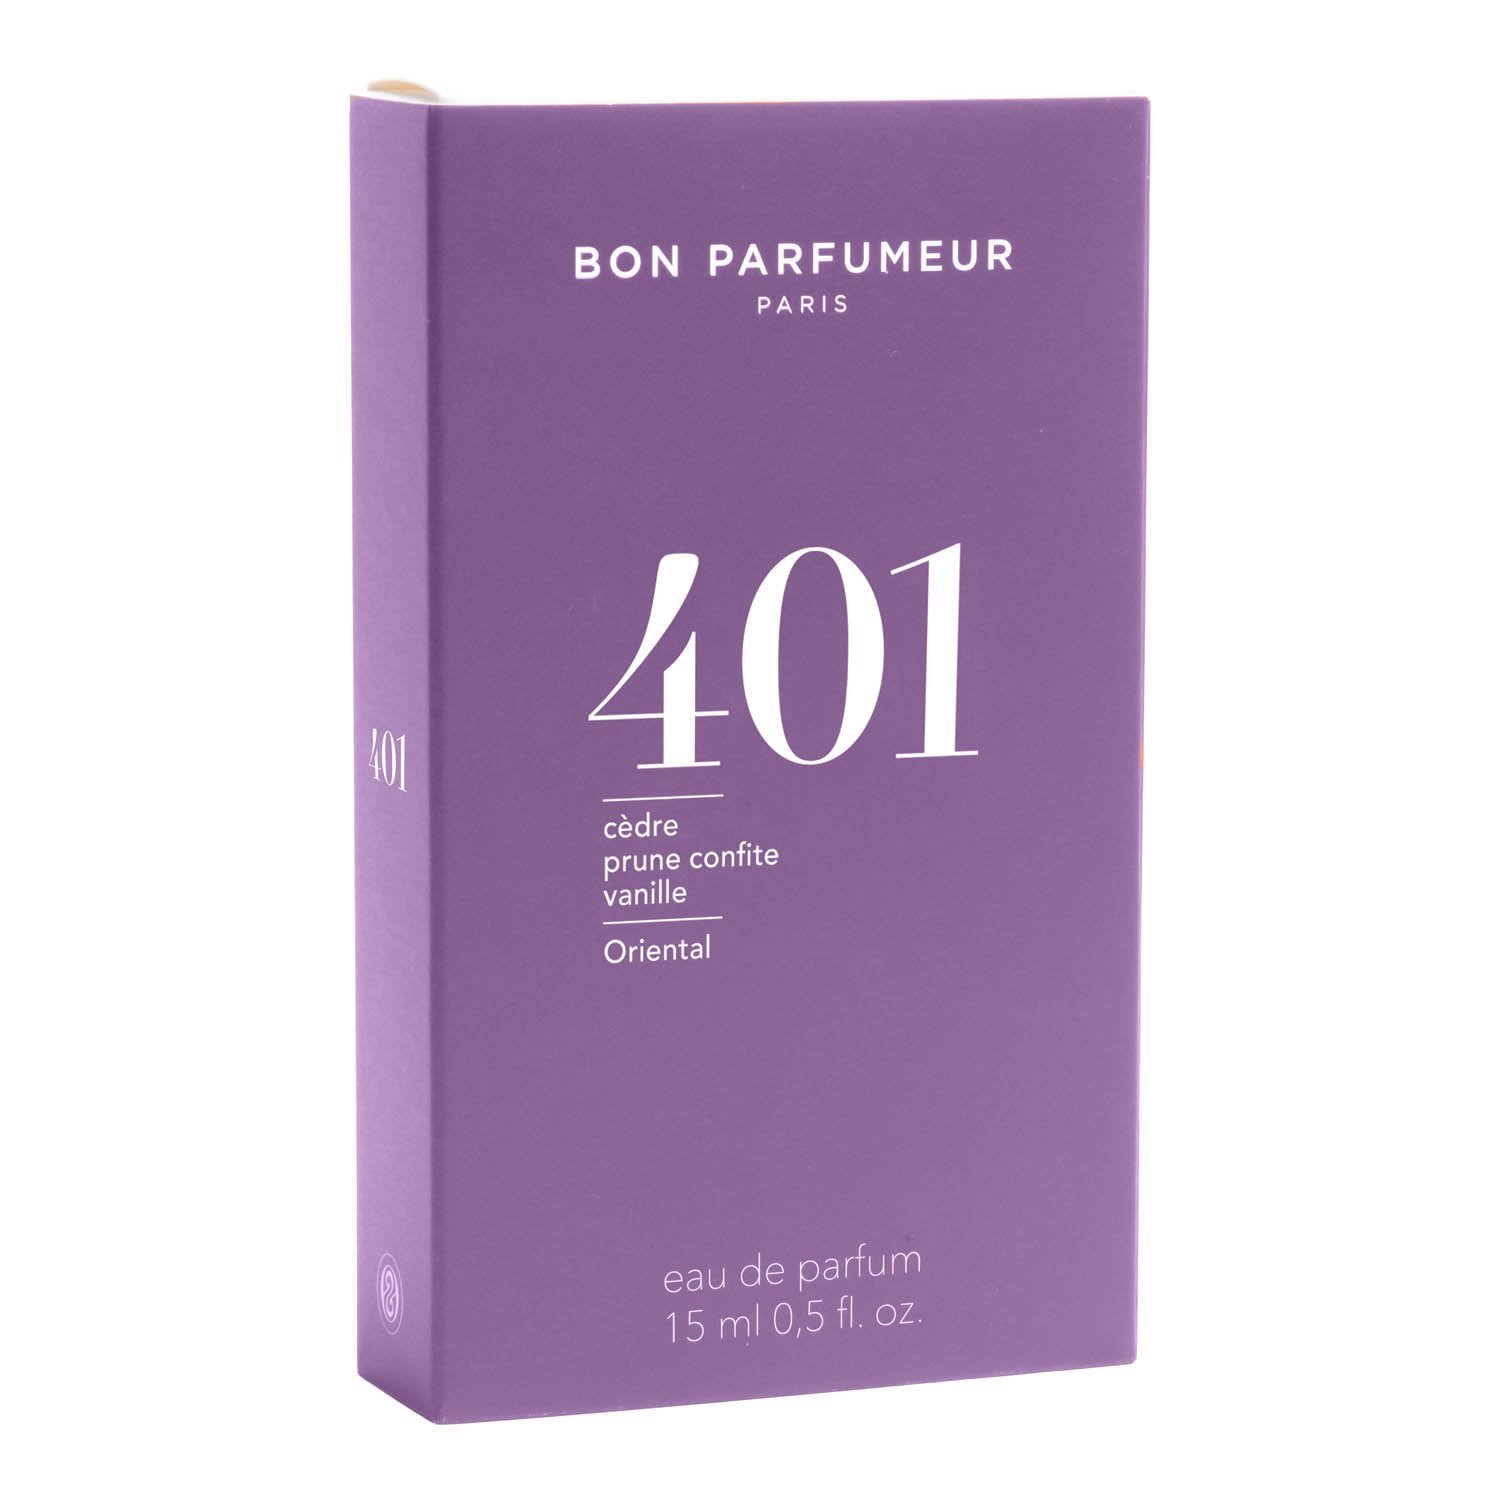 Bon Parfumeur Eau de Parfum 401 15 ml